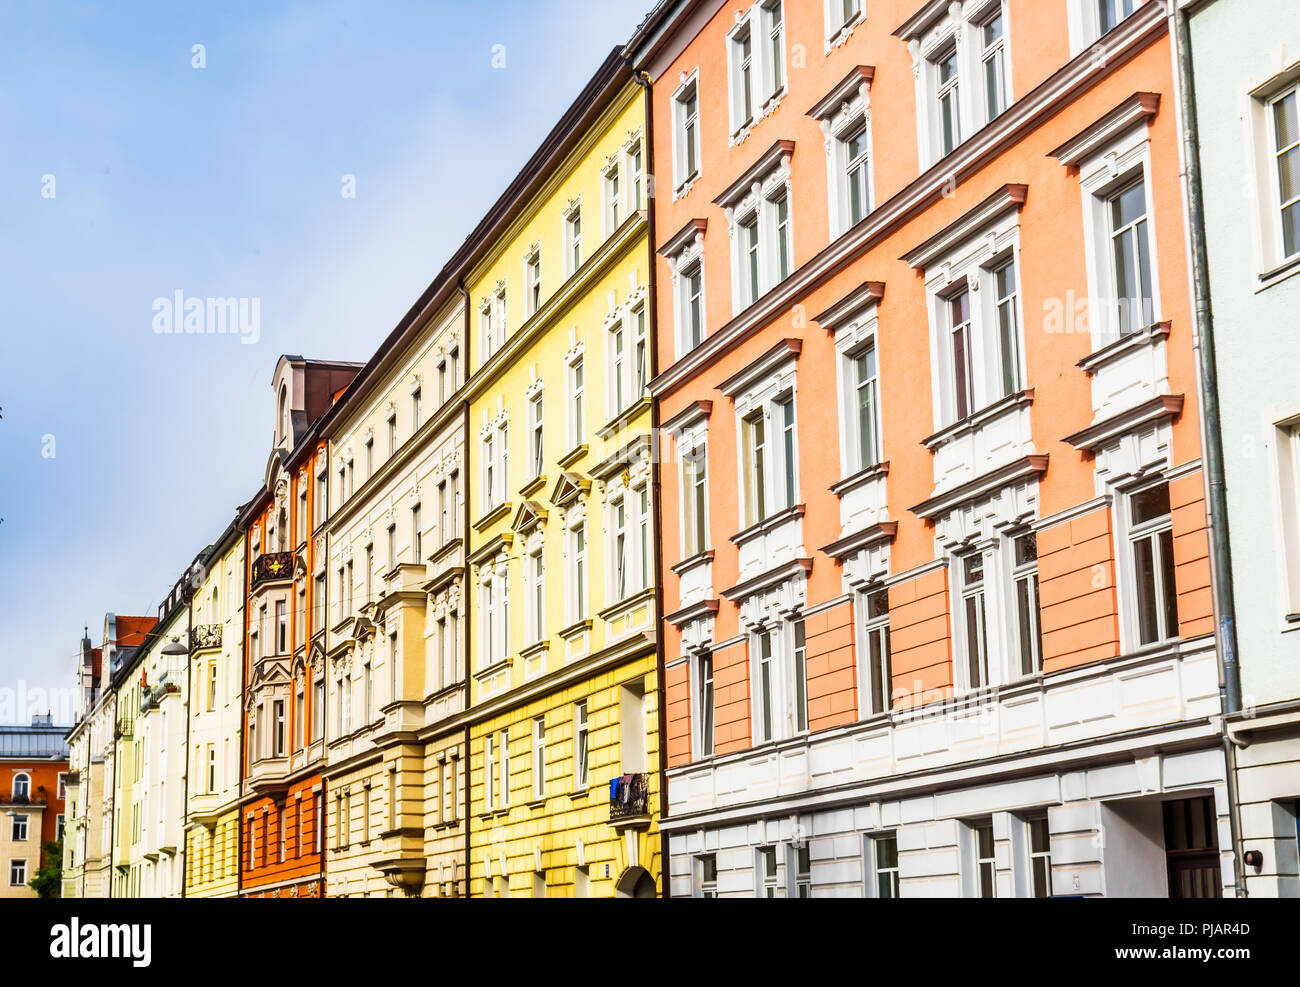 Vue sur les bâtiments colorés dans le quartier de Haidhausen à Munich - Allemagne Banque D'Images